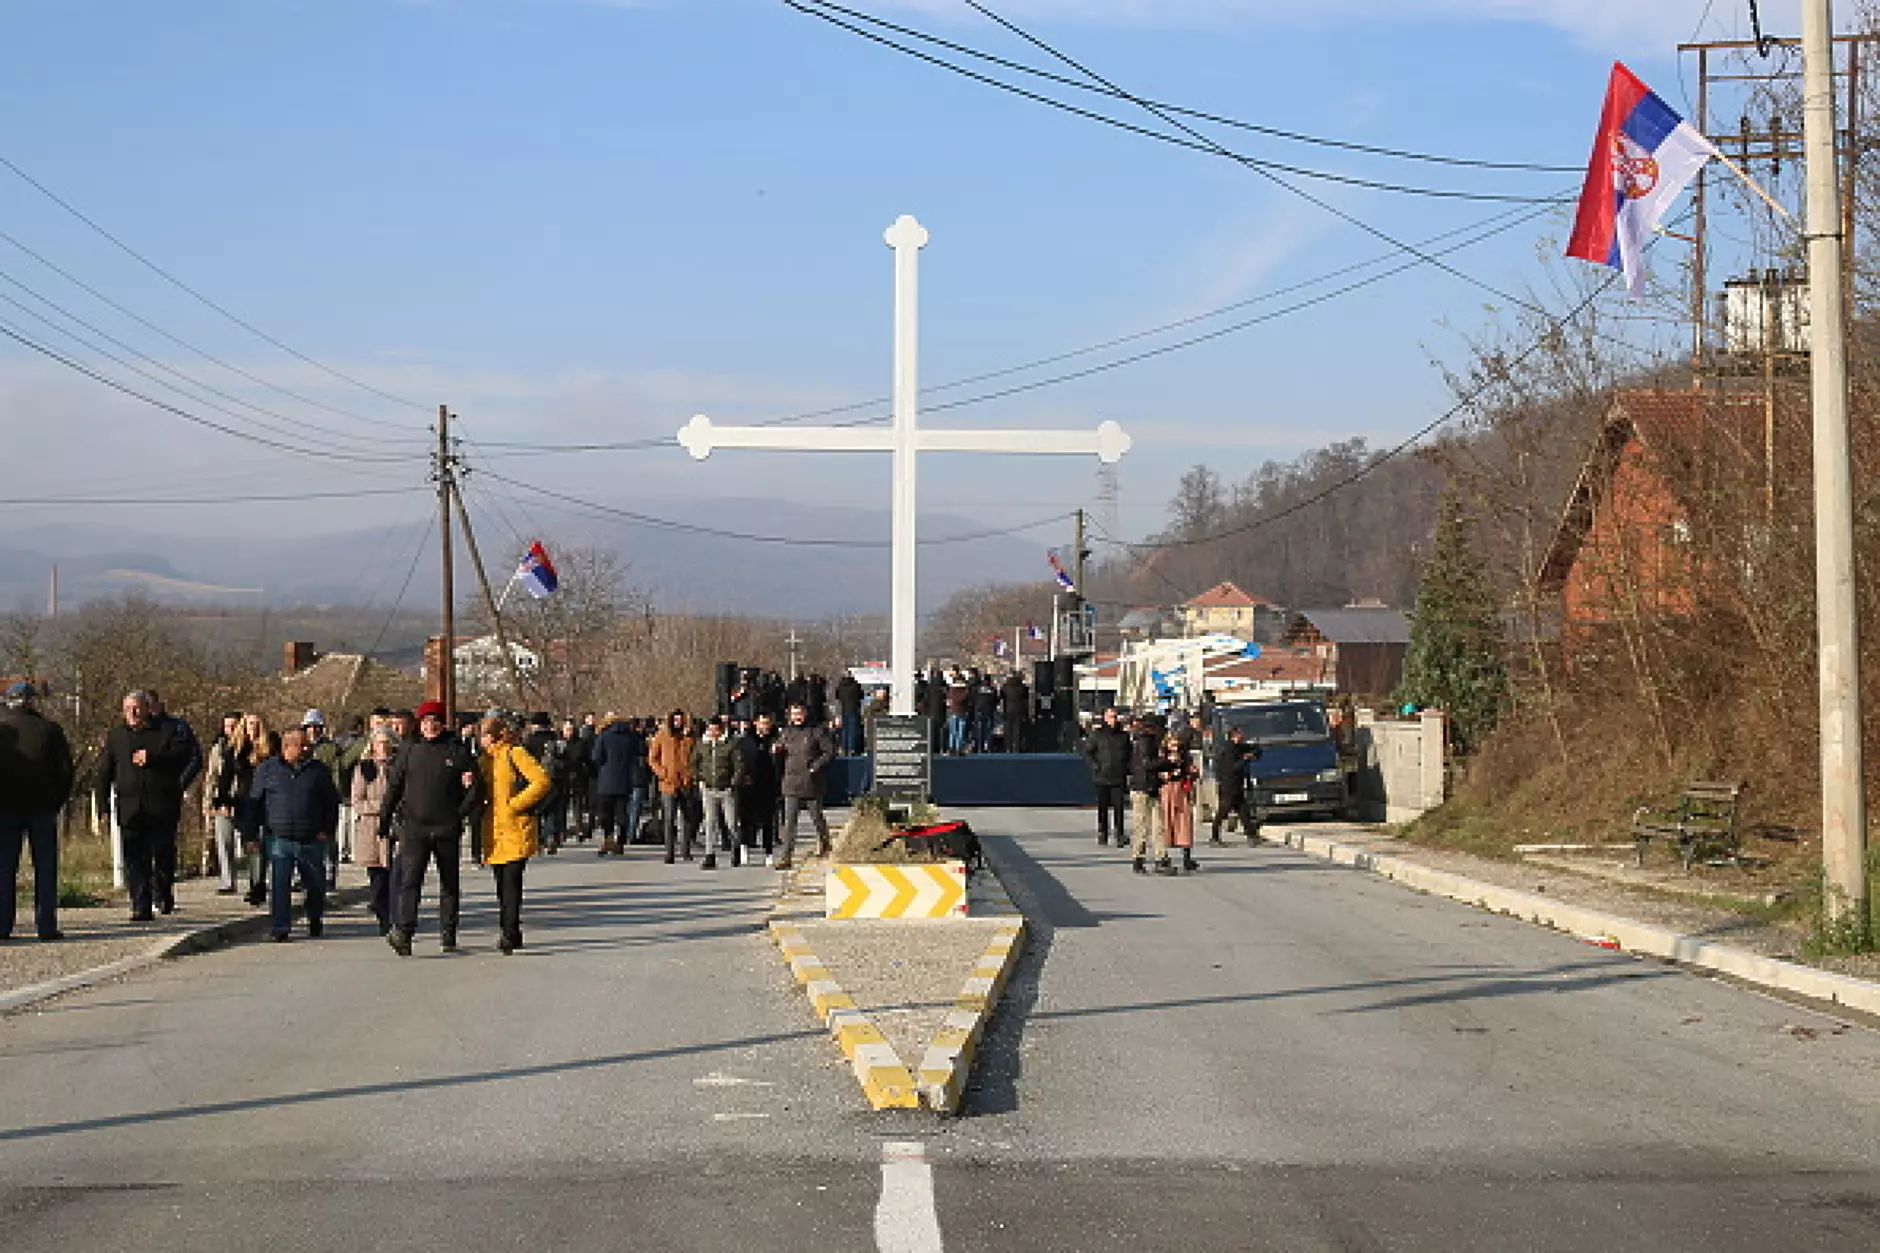 Косовските сърби вдигнаха барикадите след преговори и призиви от ЕС и САЩ